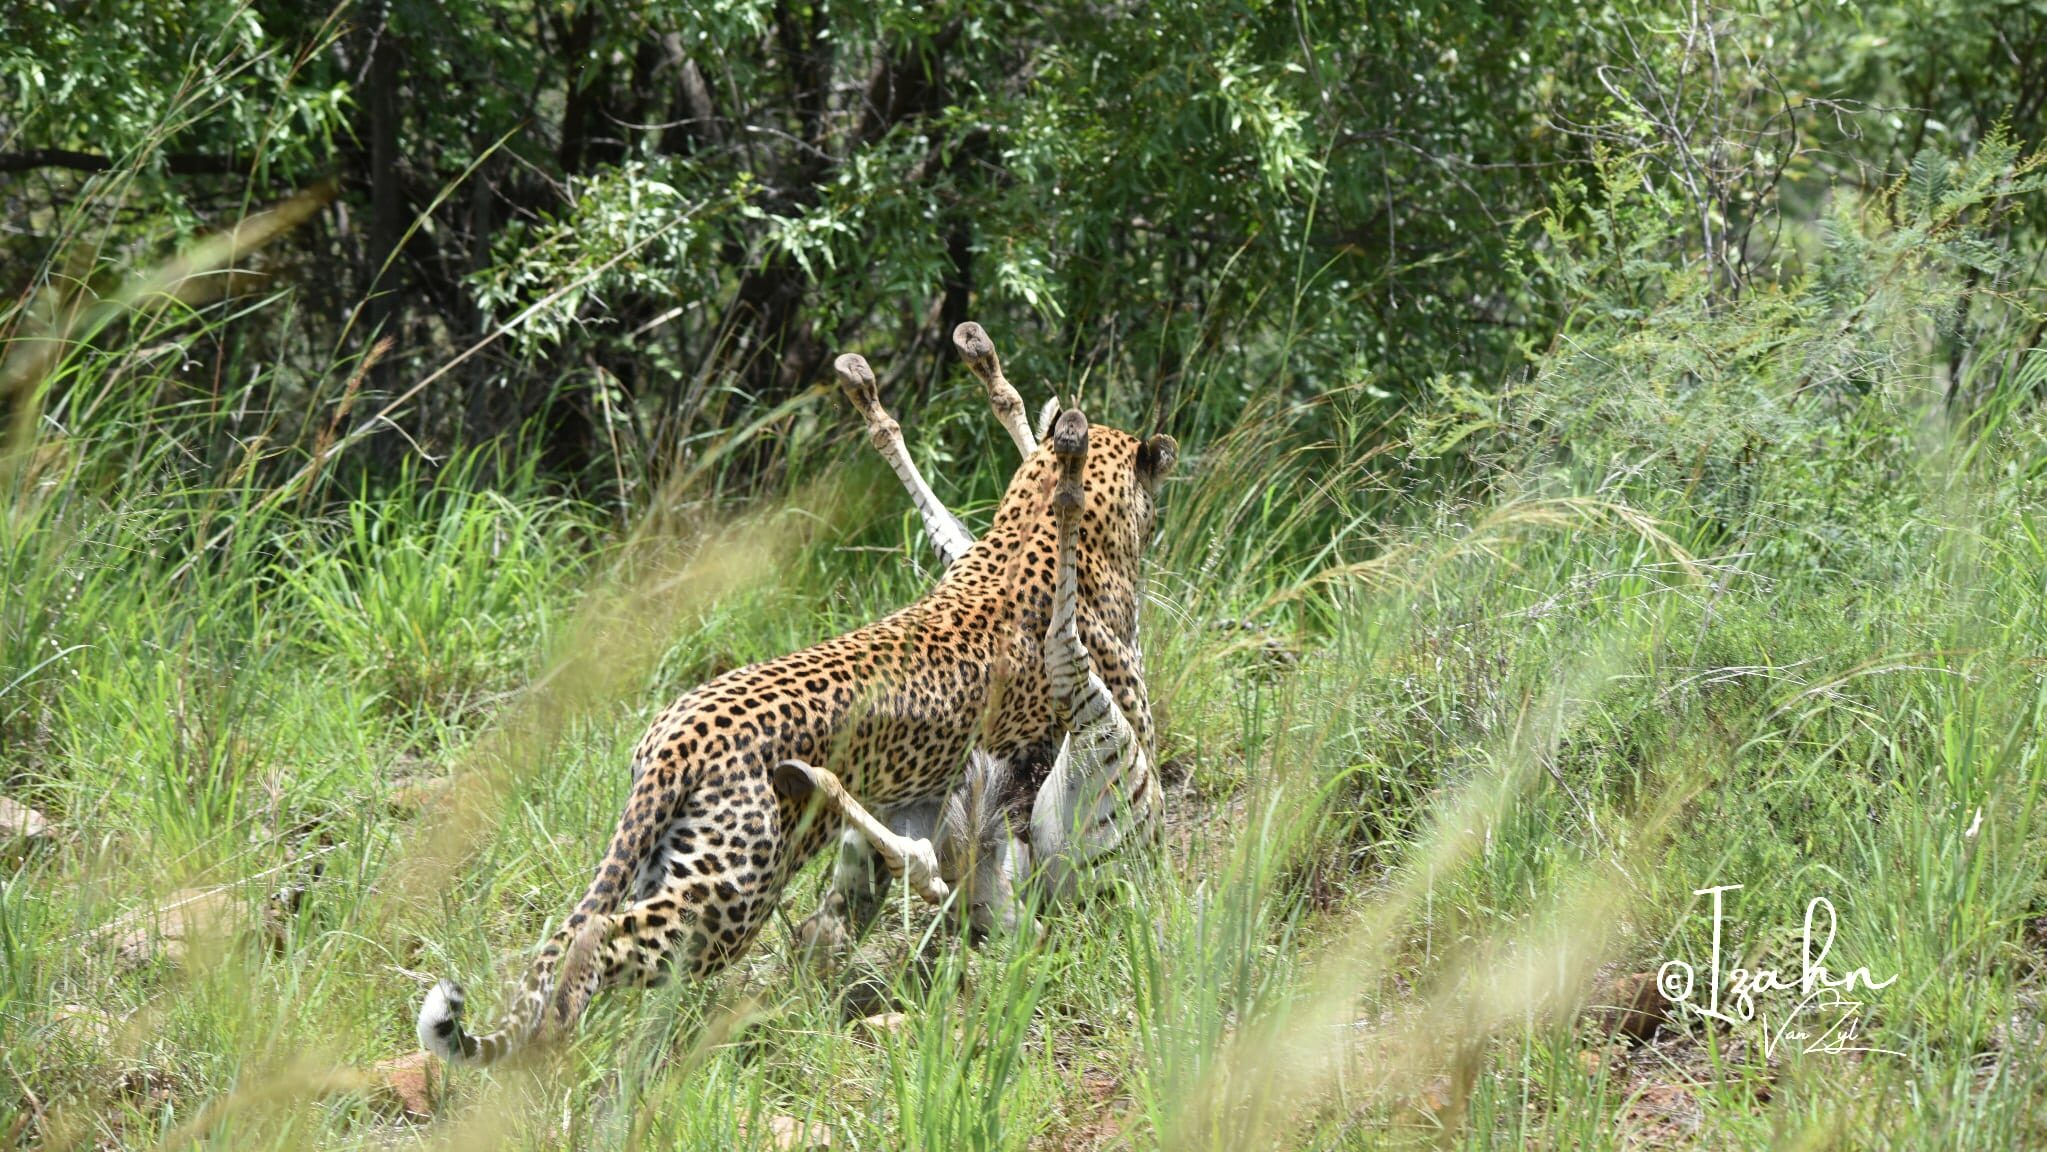 Leopard dragging baby zebra kill into the bushes in Pilanesberg Game Reserve